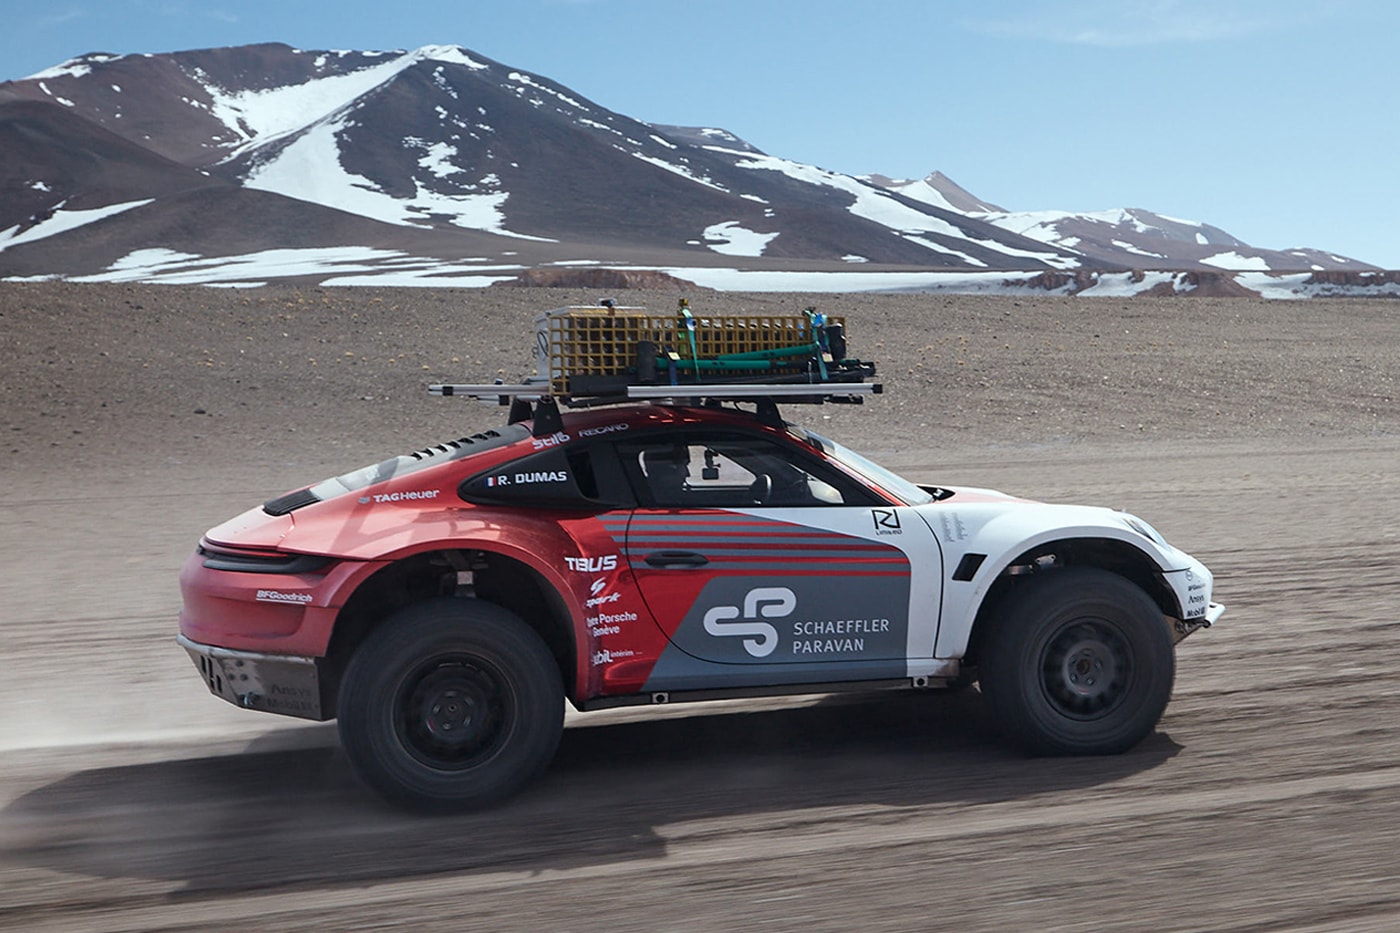 porsche 911 внедорожник масштабируется чилийский вулкан 6000 м уровень моря классический спорткар негатив 30 градусов красный серый белый видео сафари концепция